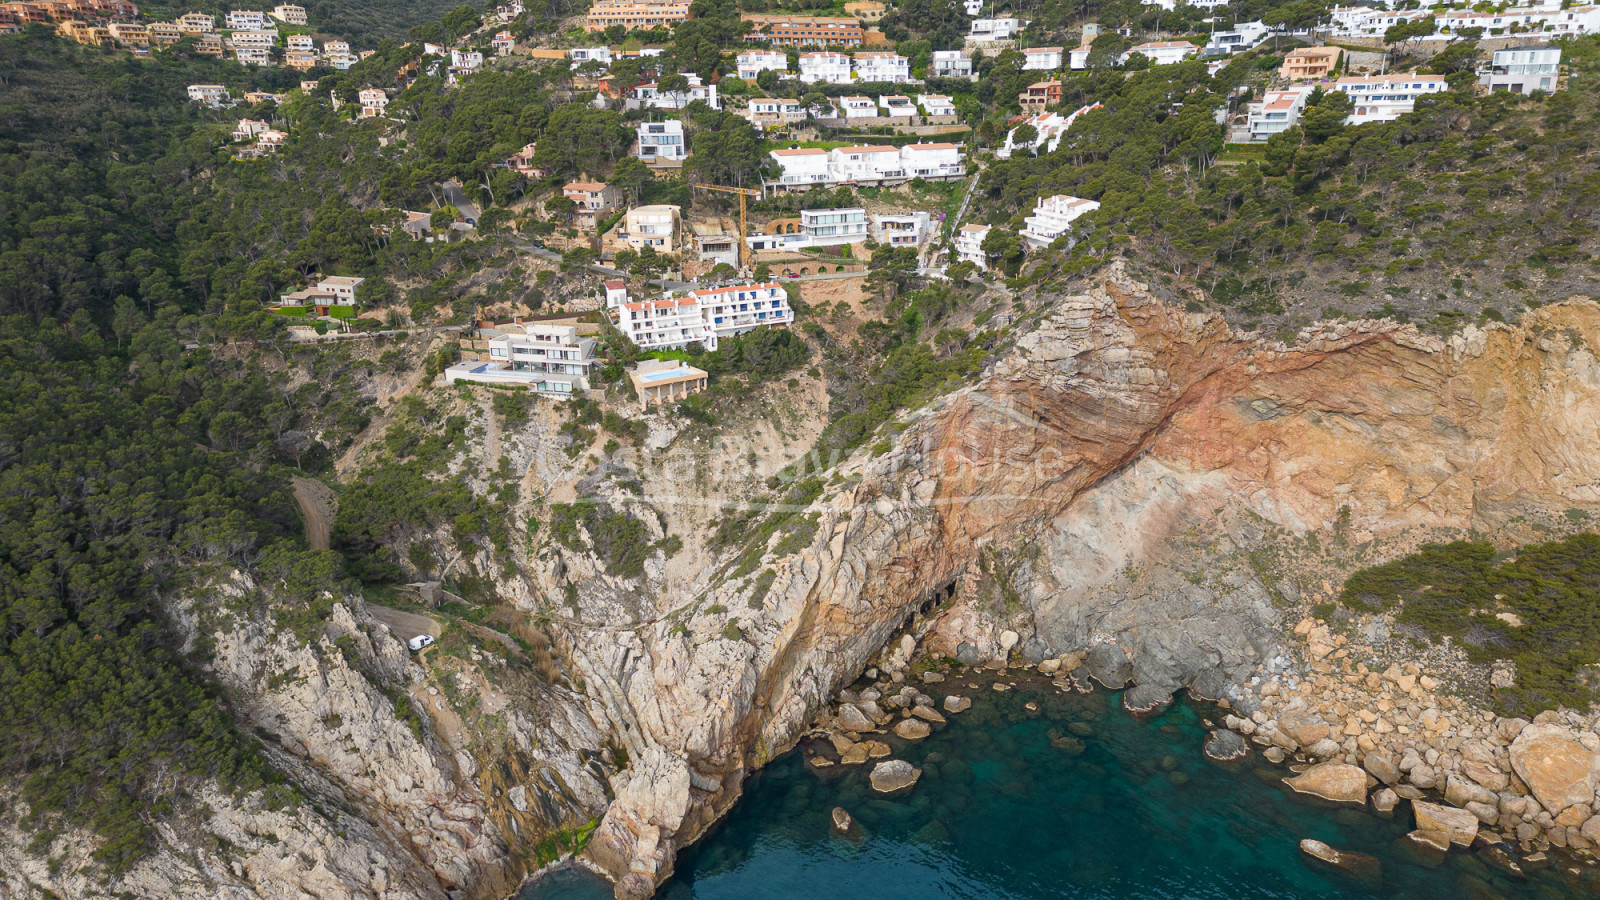 Villa de lujo obra nueva con vistas al mar, Begur Sa Tuna